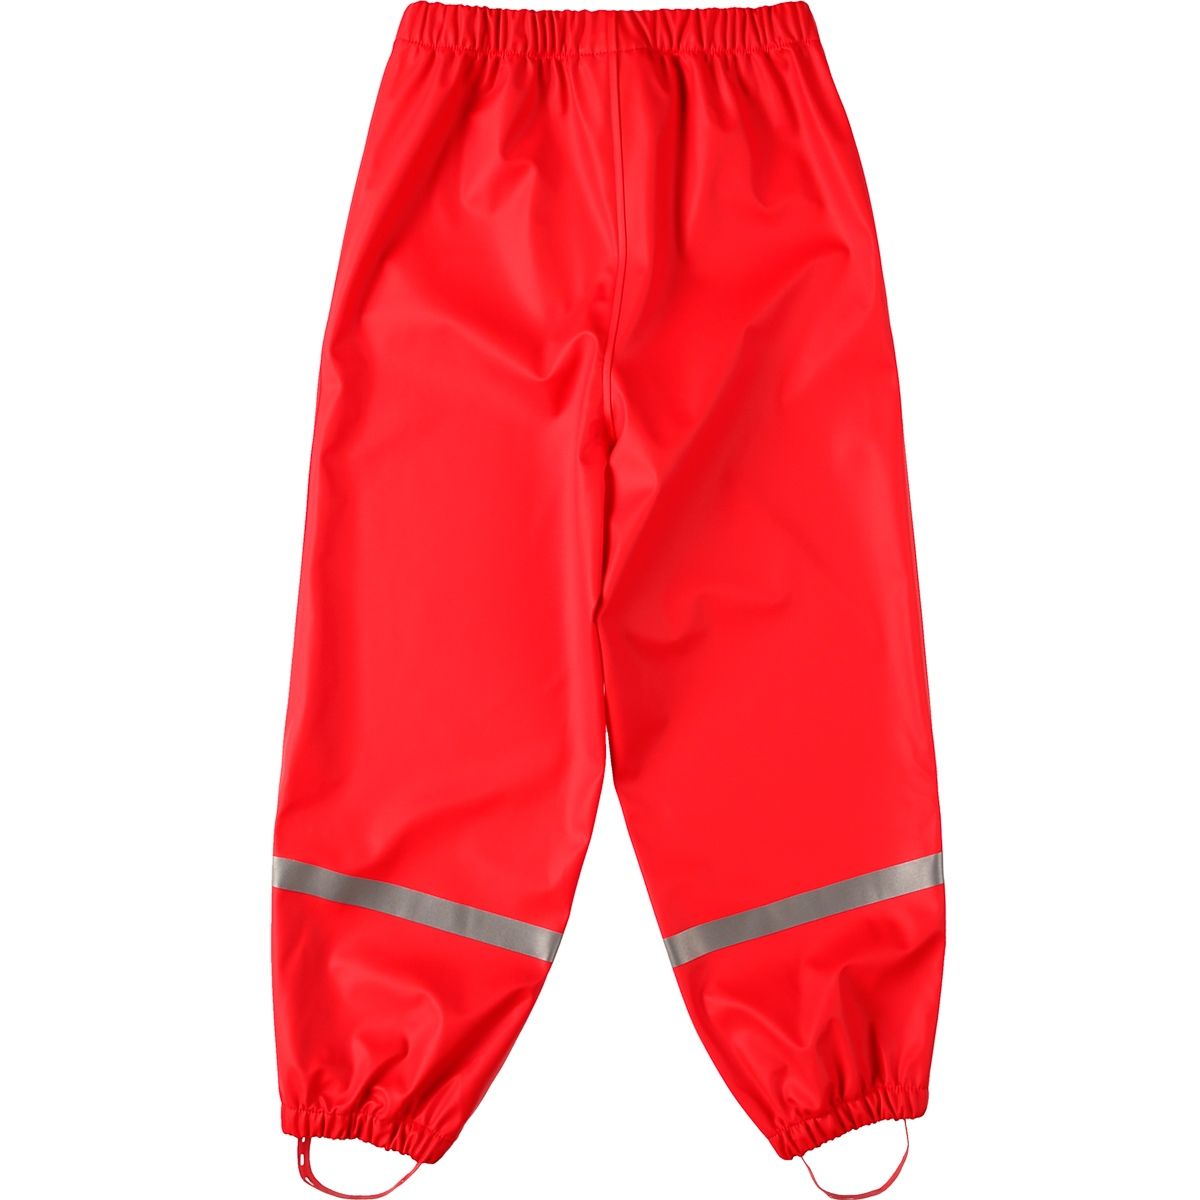 Products | Softskin | Regenhose Rot BMS Outdoor Rainwear | All Buddelbundhose Kinder